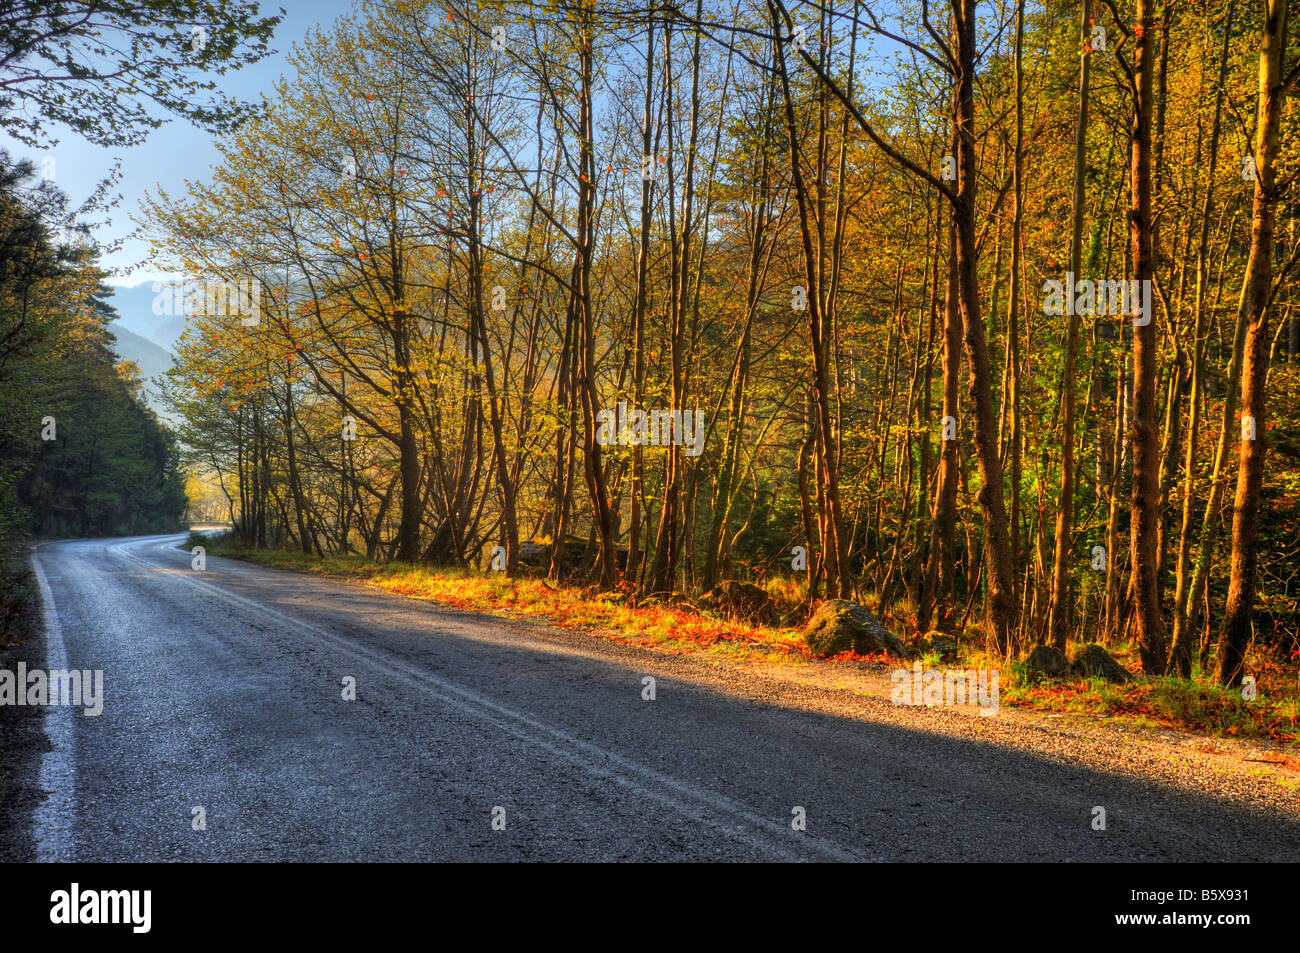 Road through mountainous forest Stock Photo